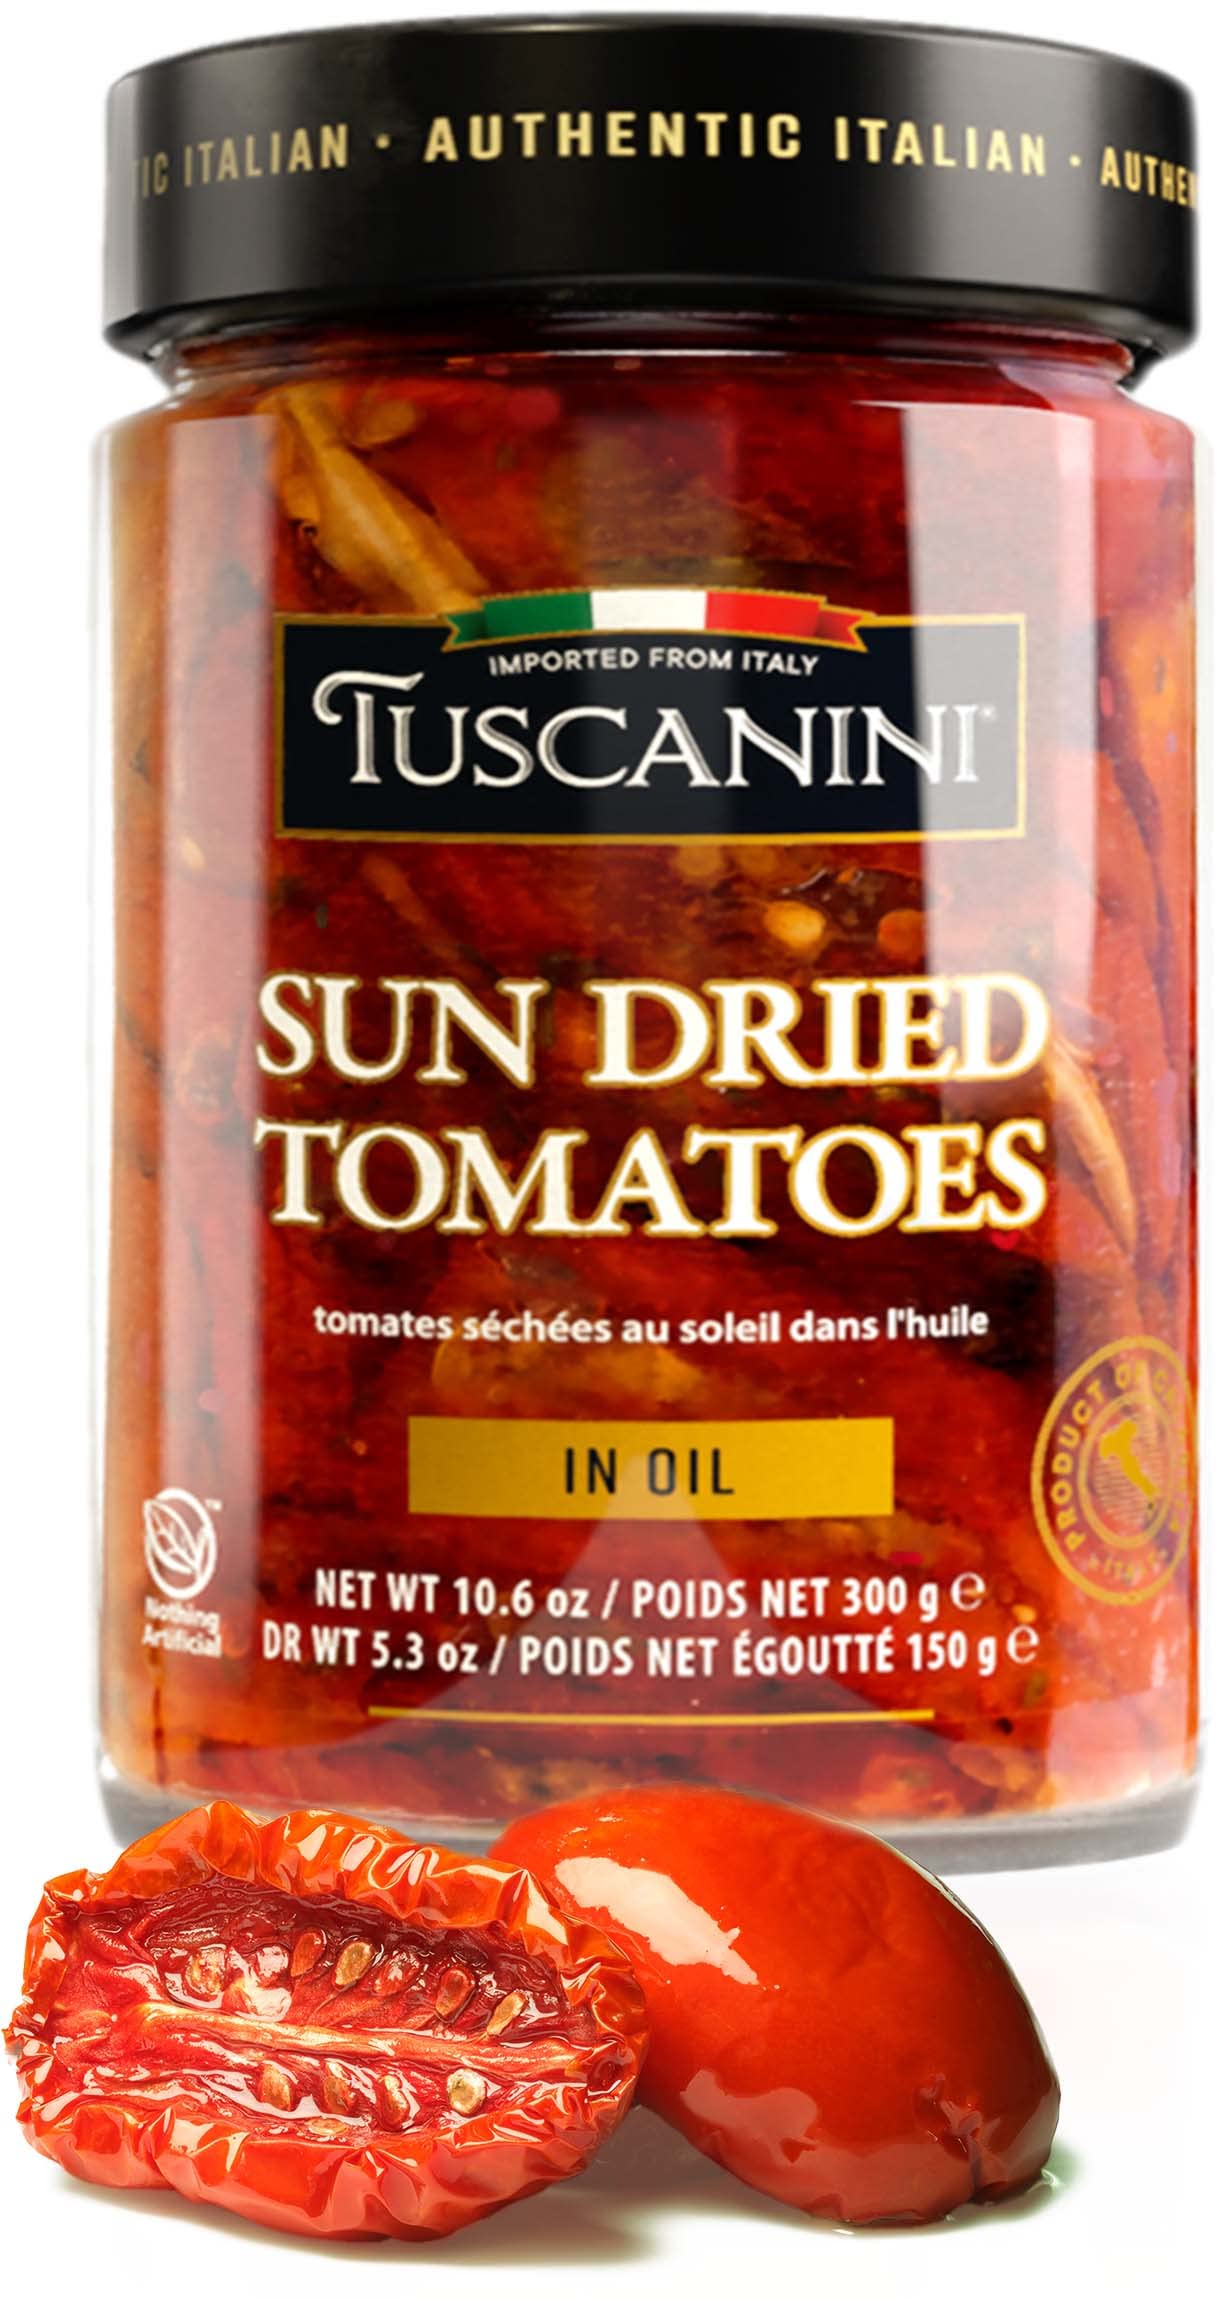 Tuscanini Premium Sun-dried Tomatoes